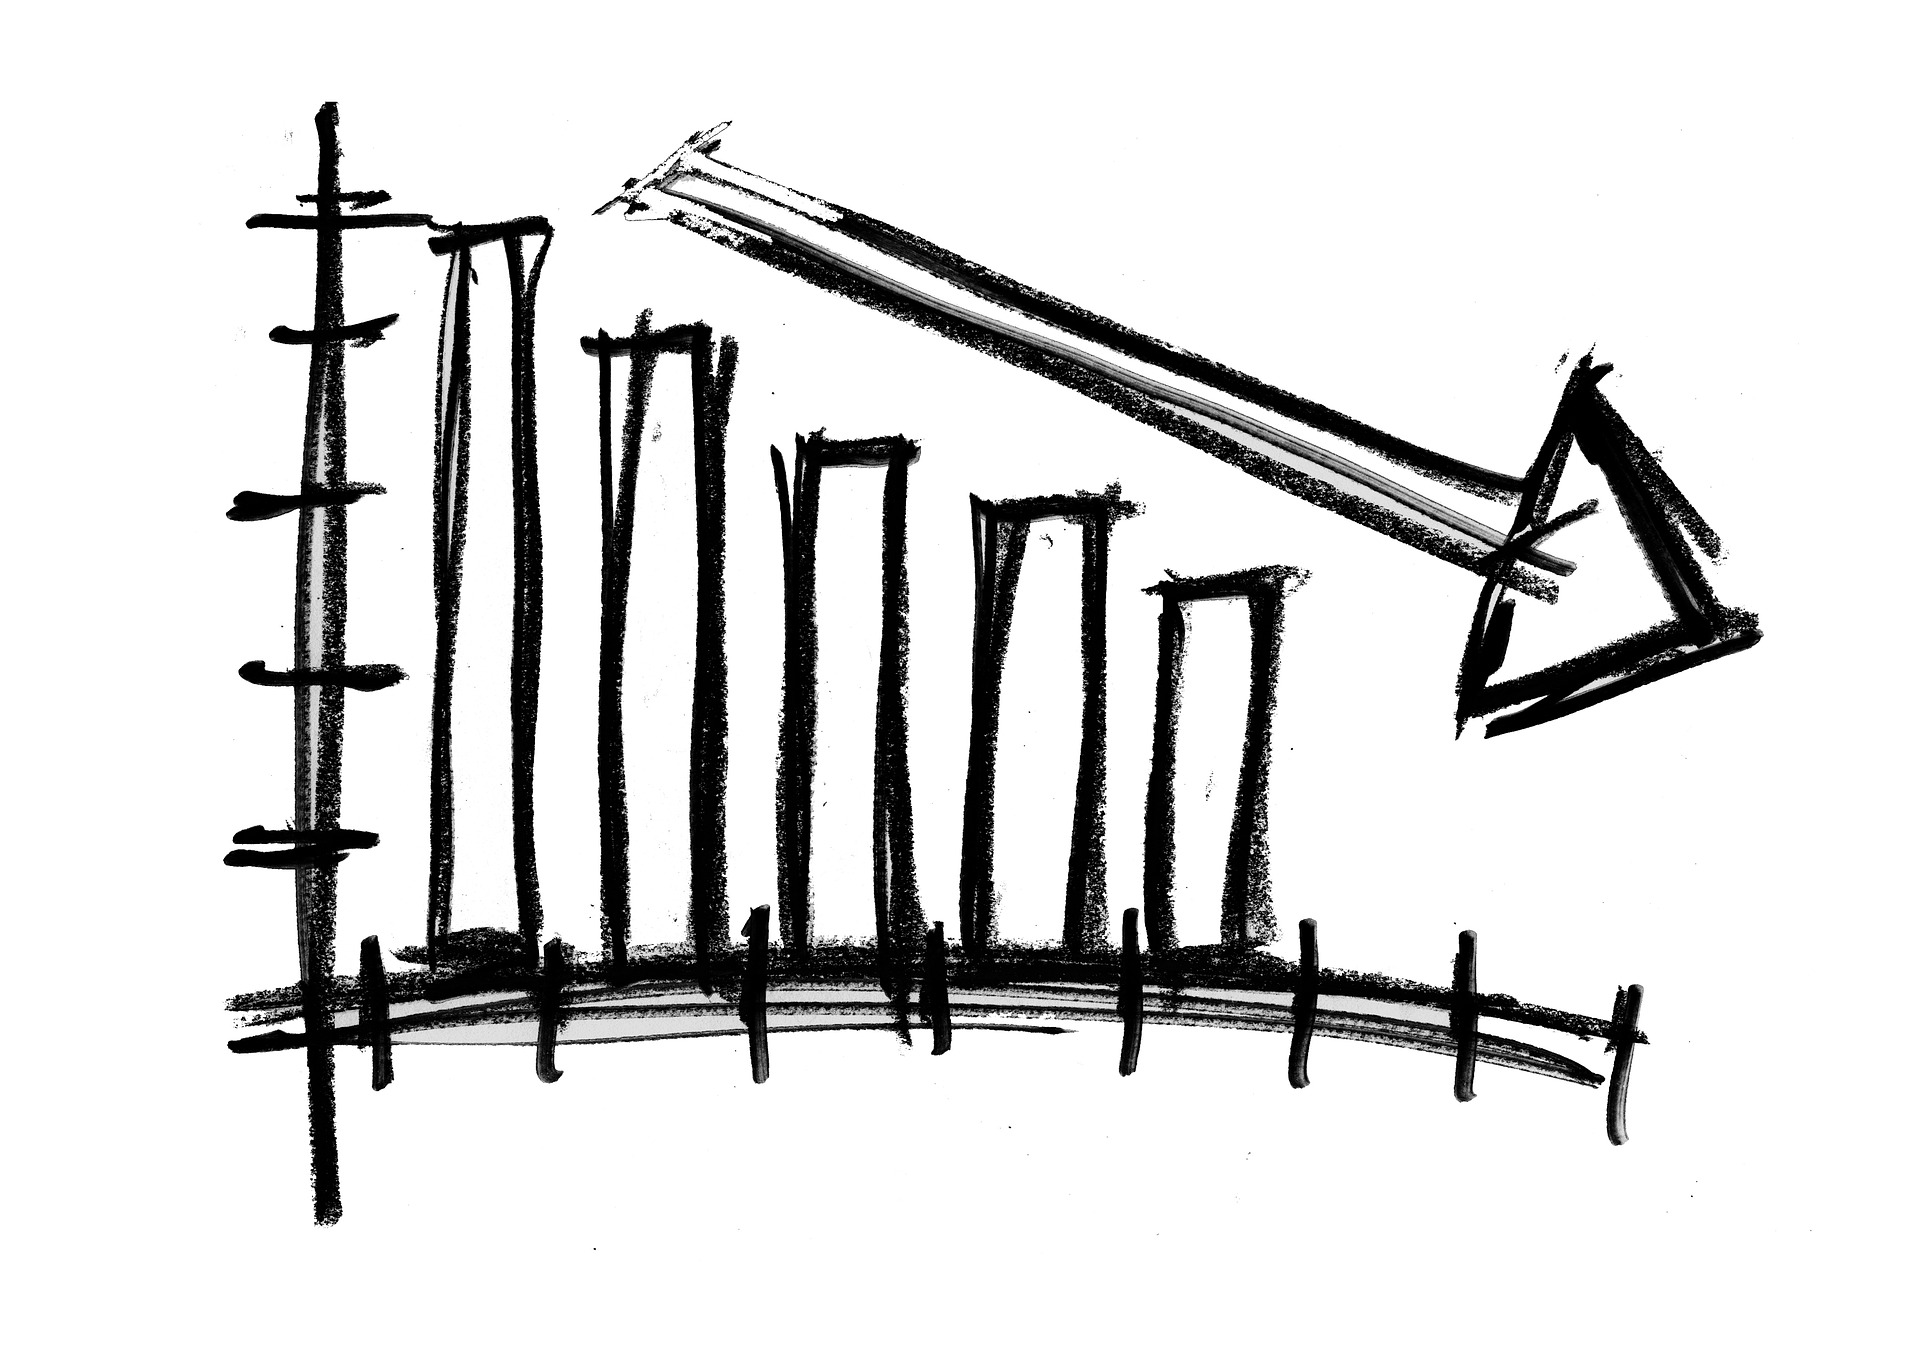 Image: downward indicating graph